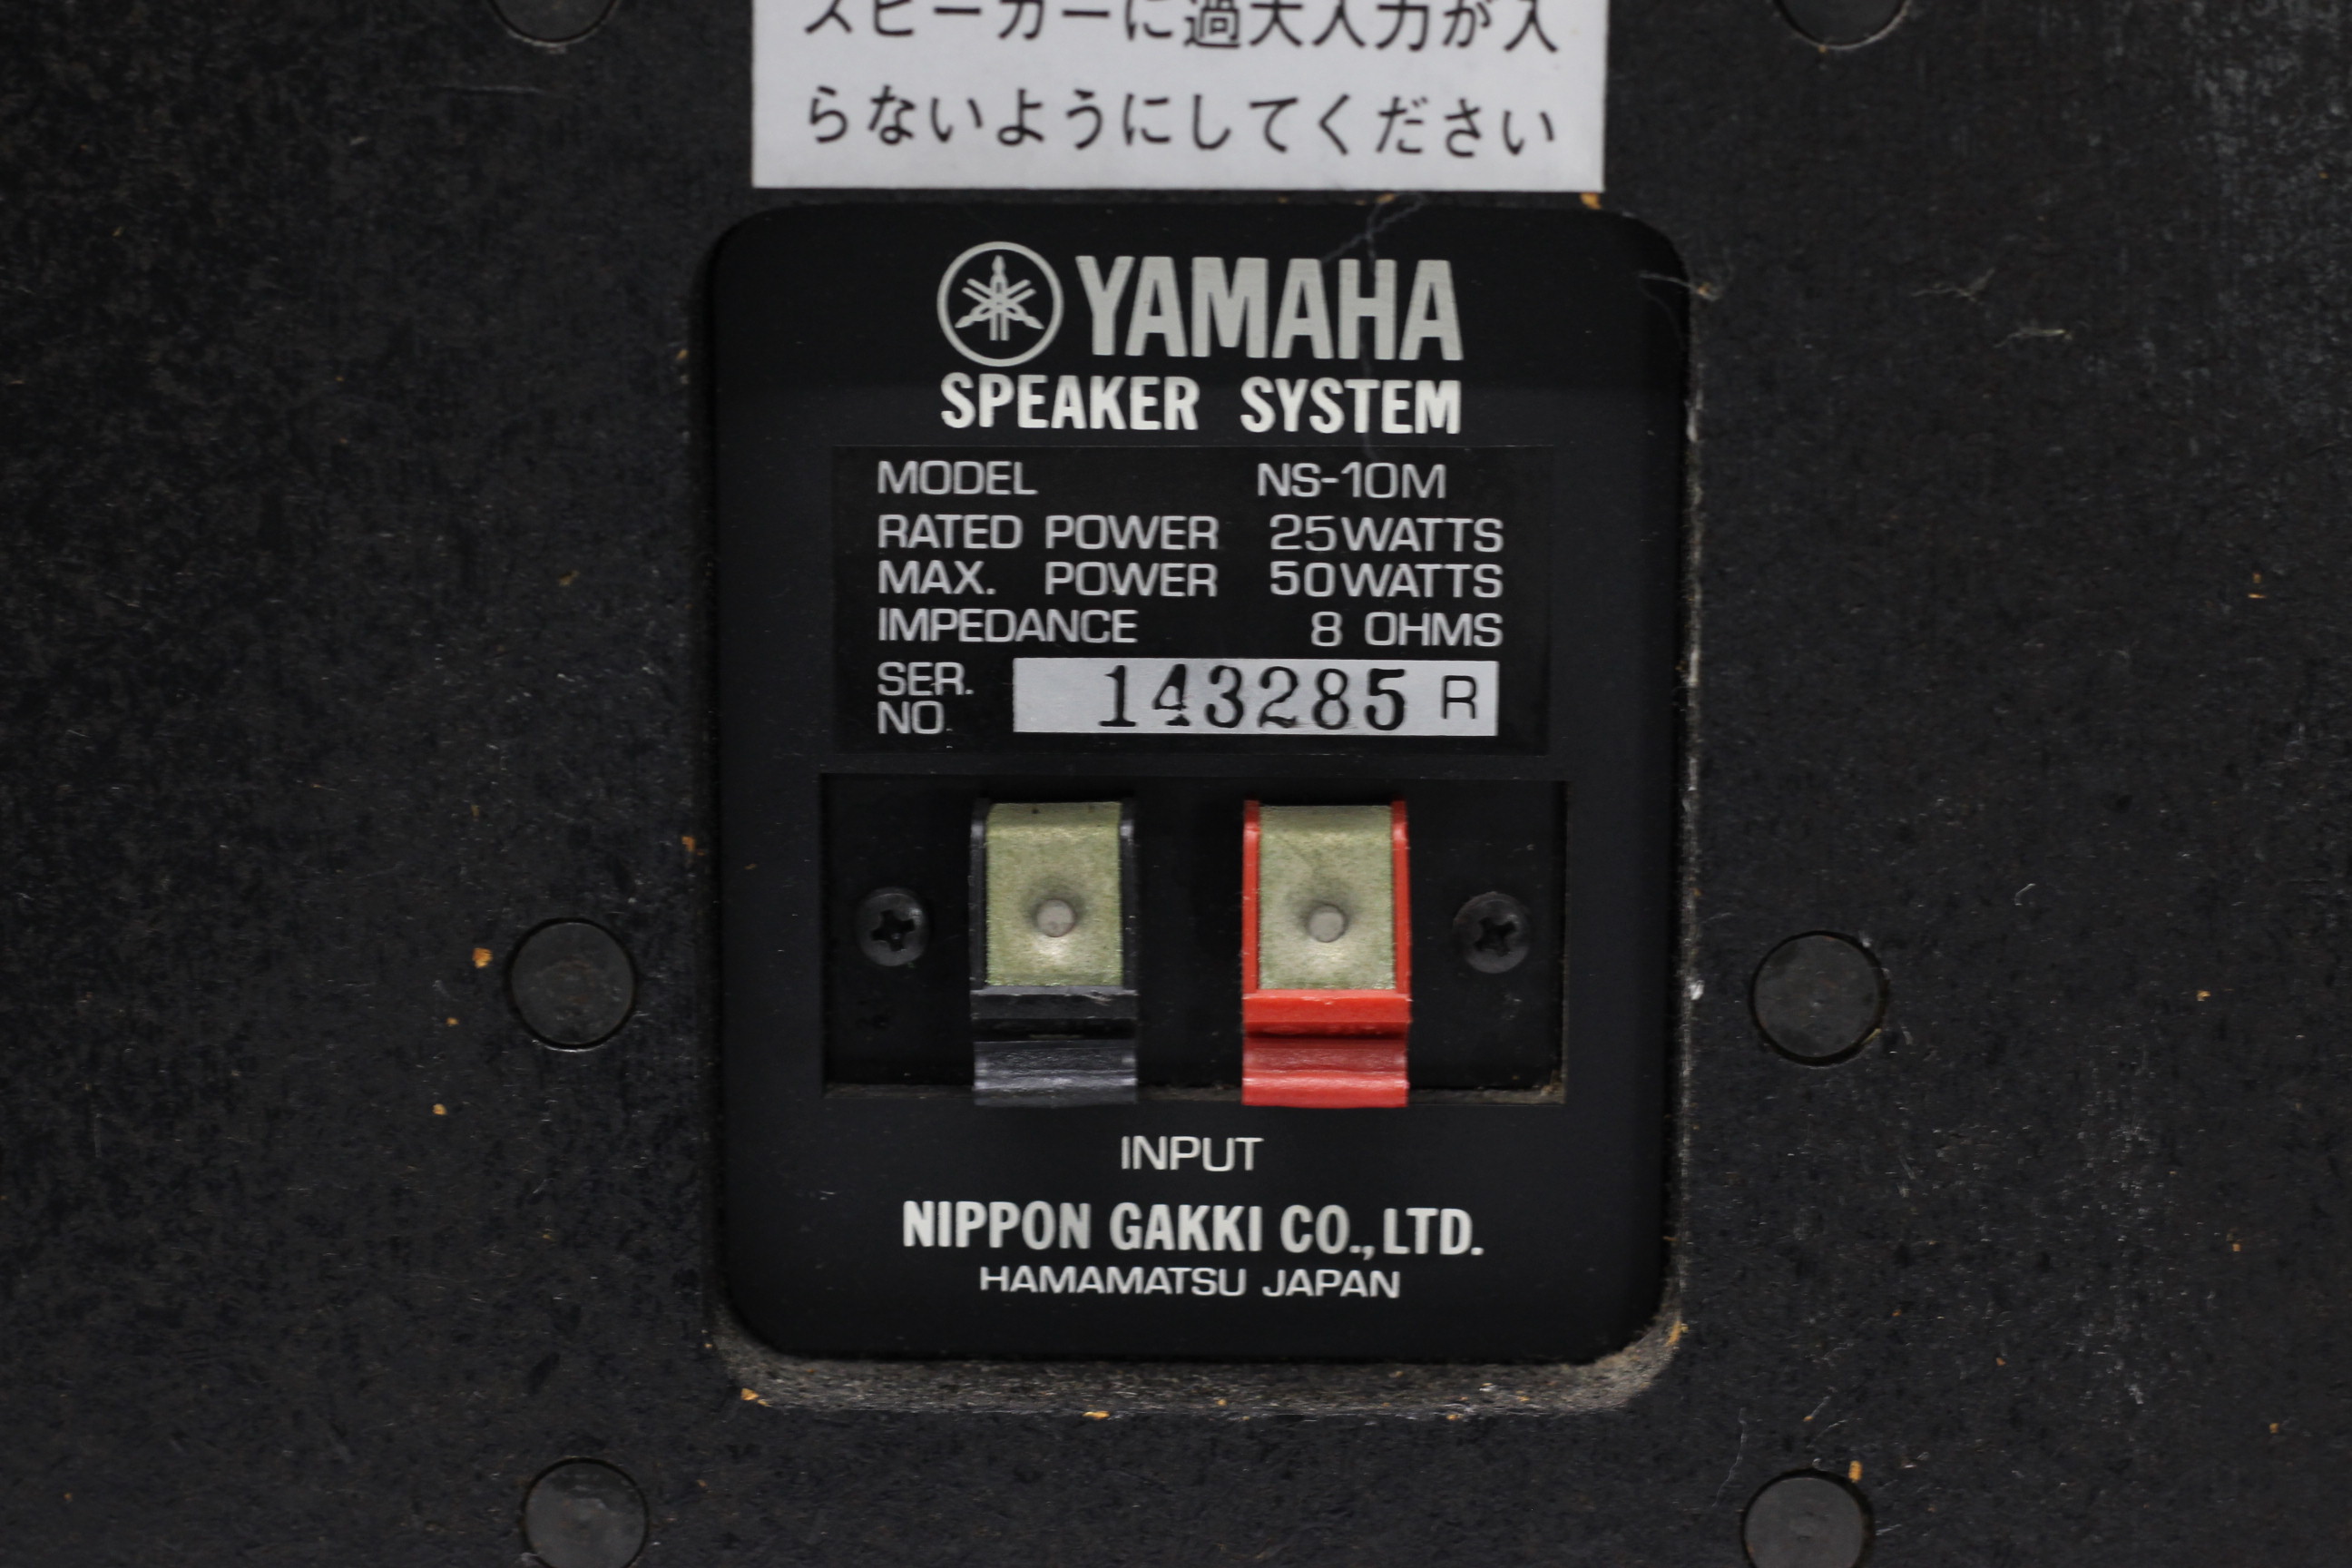 アバックWEB-SHOP / 【中古】YAMAHA NS-10M【コード21-05138】モニター